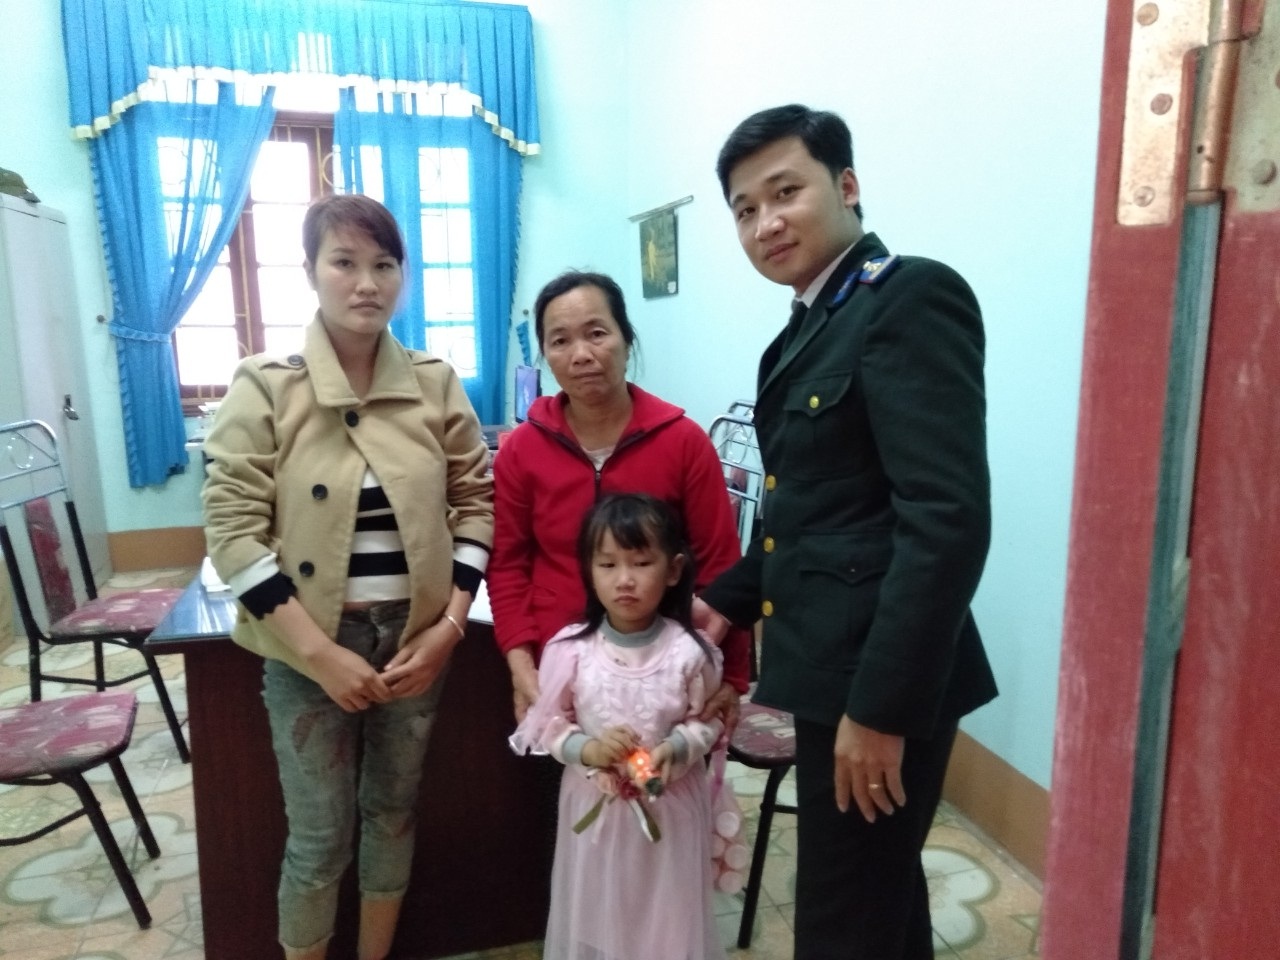 Chi cục THADS huyện Vĩnh Lộc tổ chức thi hành việc giao người chưa thành niên cho người trực tiếp chăm sóc, nuôi dưỡng